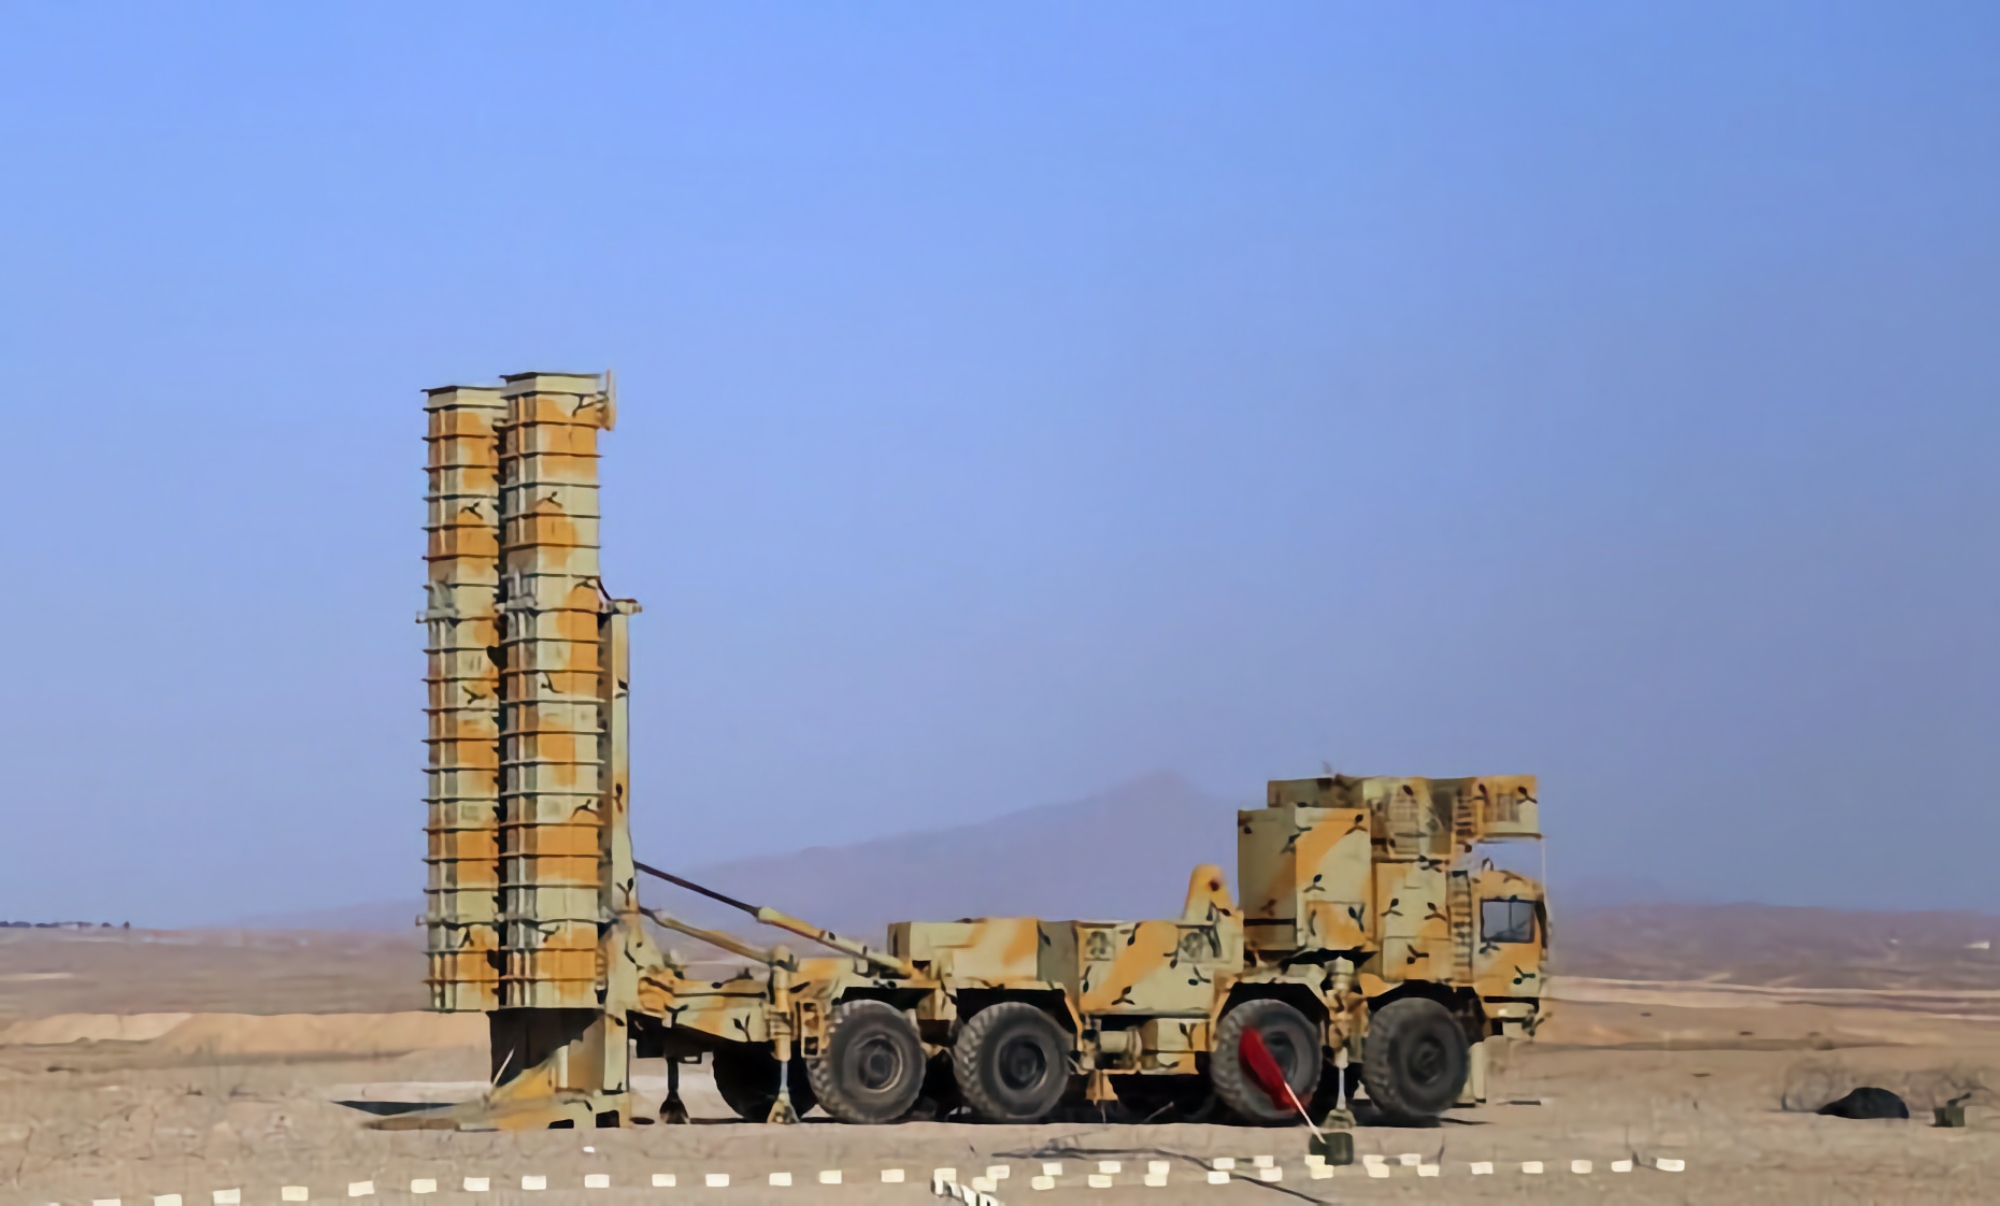 Iran prezentuje zmodernizowany system obrony powietrznej Bavar-373, zdolny do rażenia celów powietrznych oddalonych o ponad 300 km, w tym rakiet balistycznych